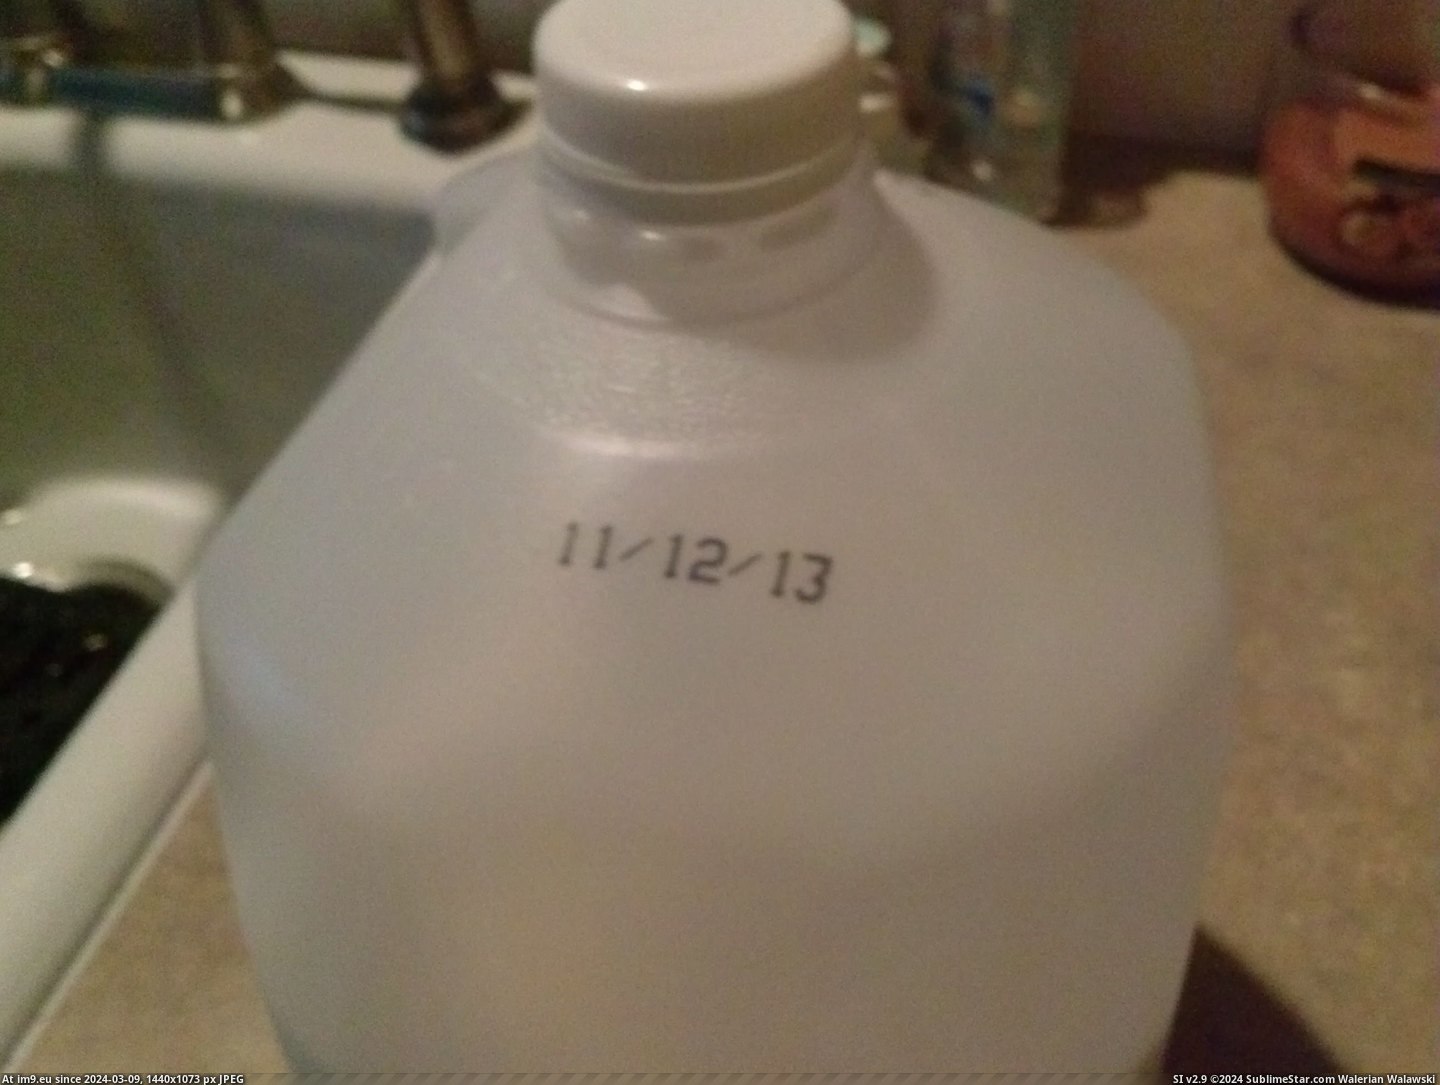 #Milk #Mildly #Expires #Interesting [Mildlyinteresting] The date my milk expires is mildly interesting Pic. (Bild von album My r/MILDLYINTERESTING favs))